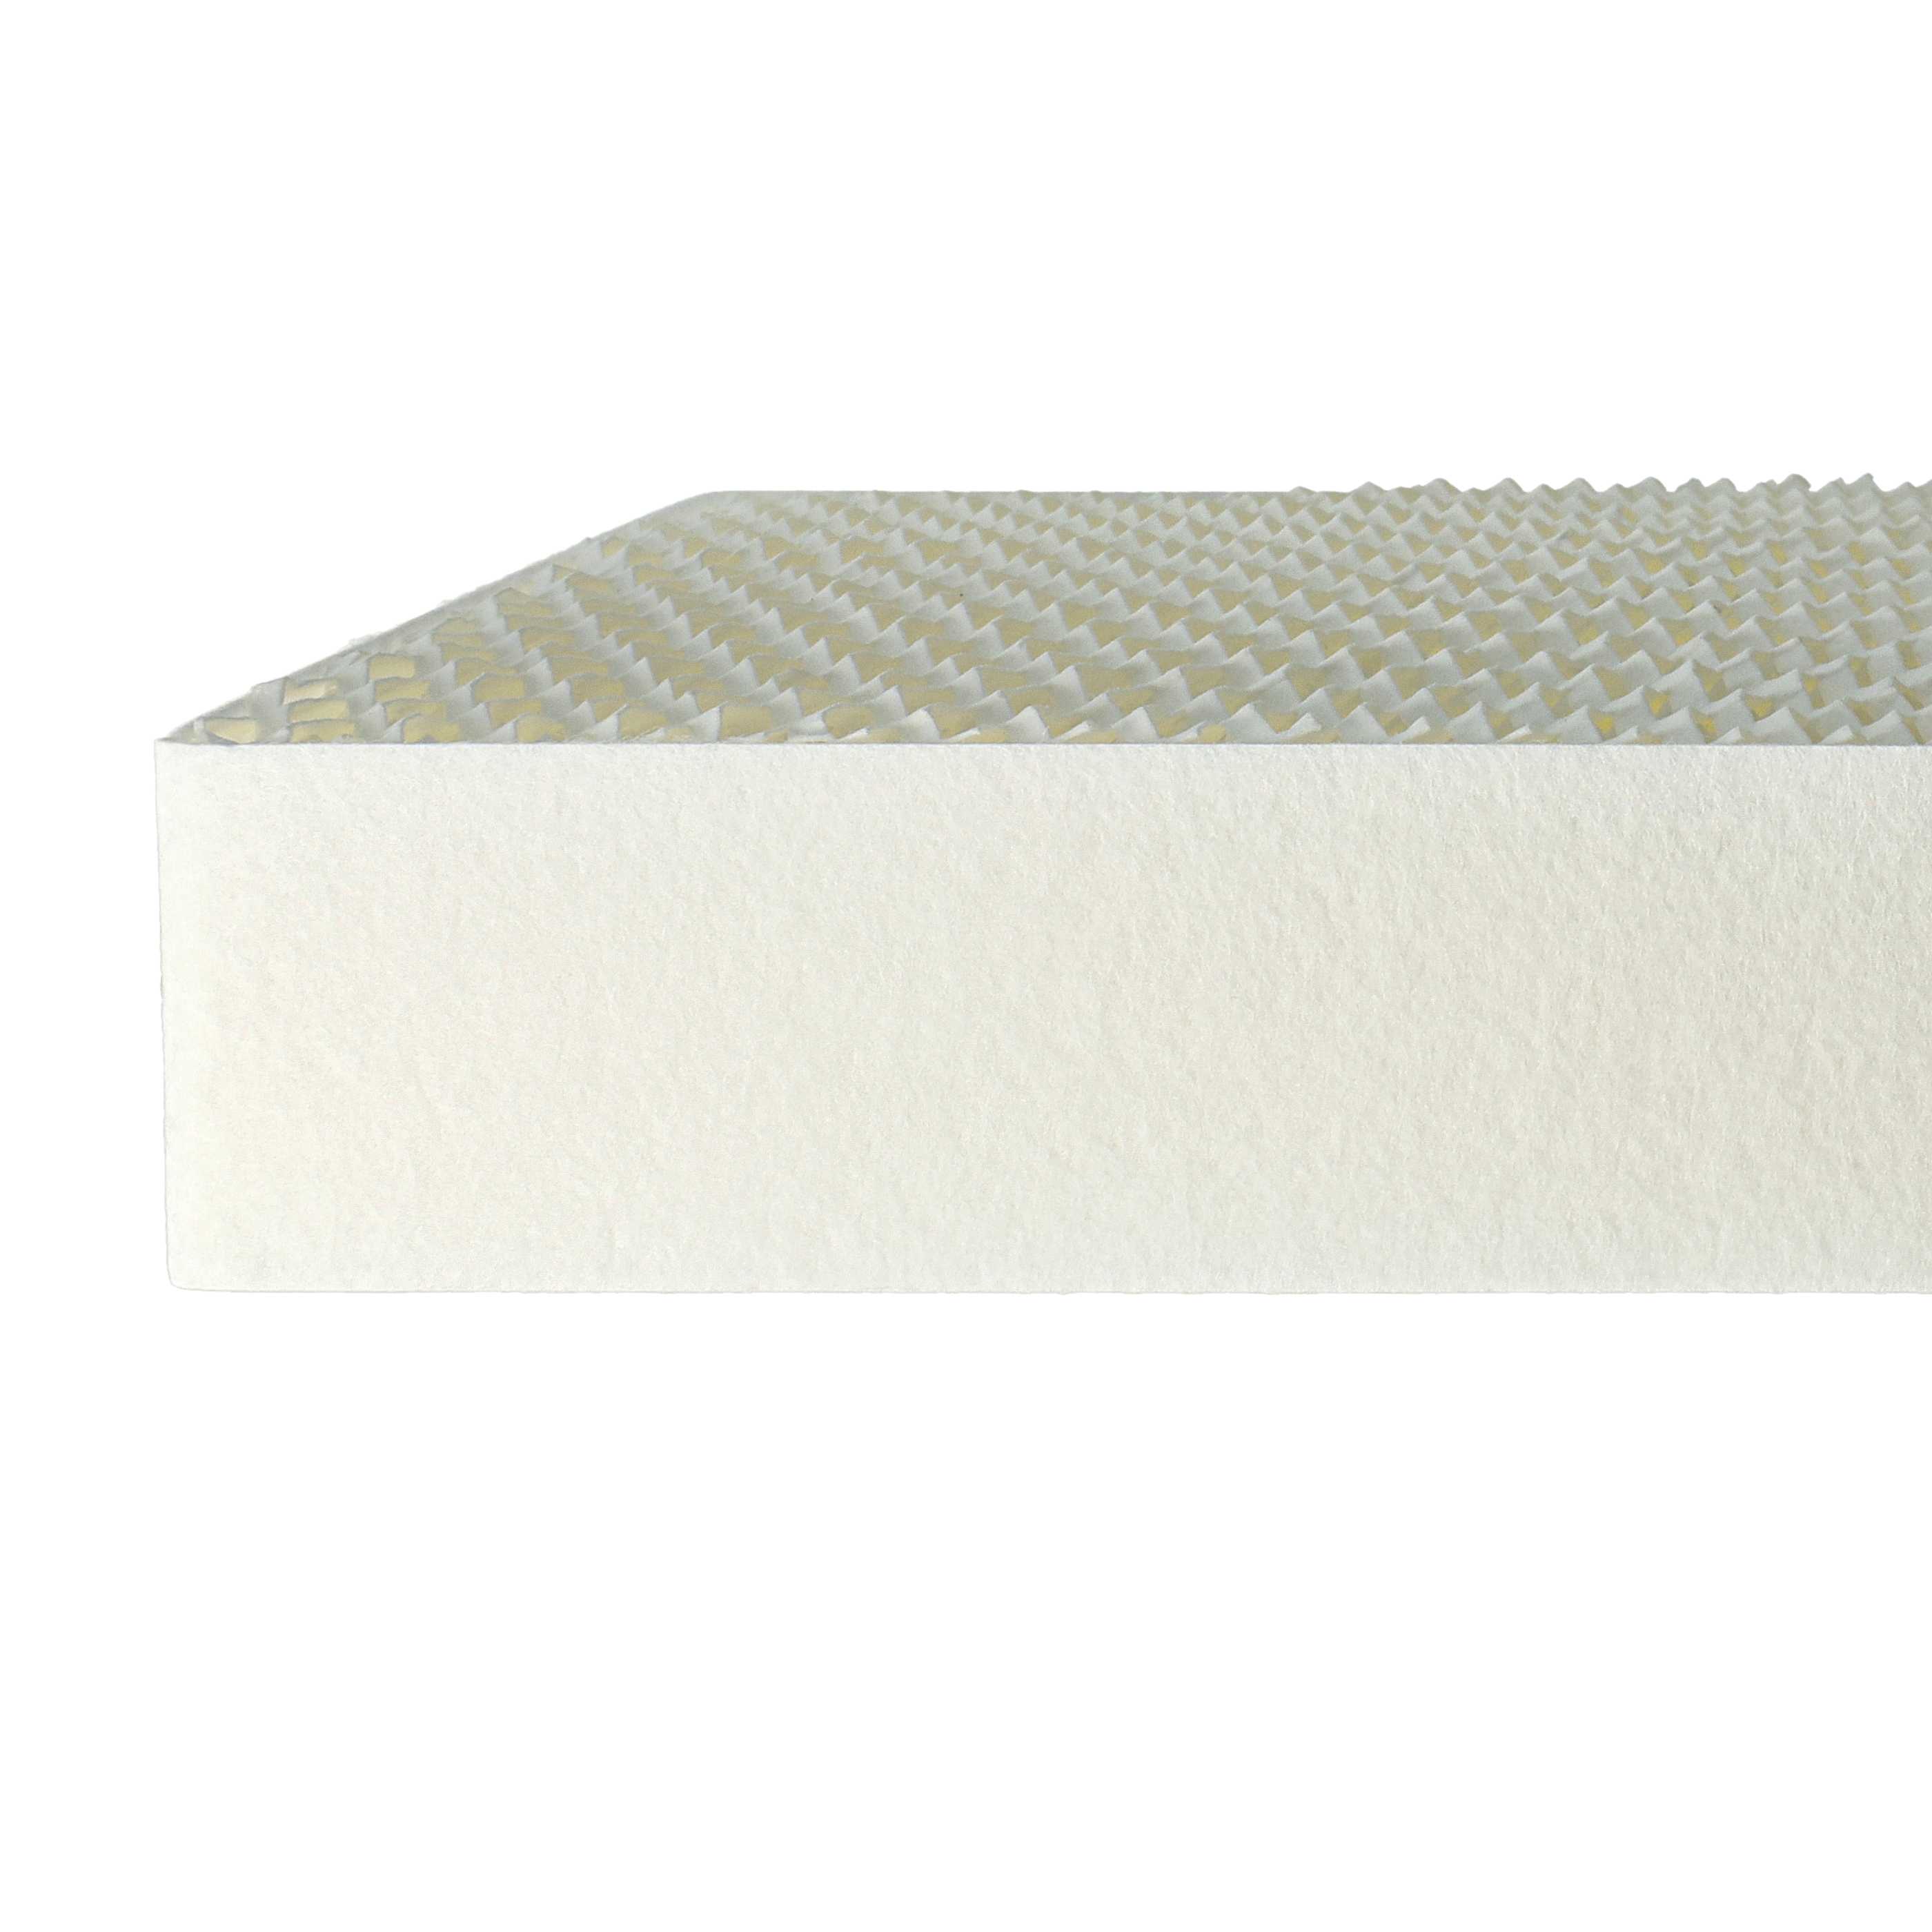 6x Filtre remplace Stadler Form 10004, 14643/10 pour humidificateur - papier